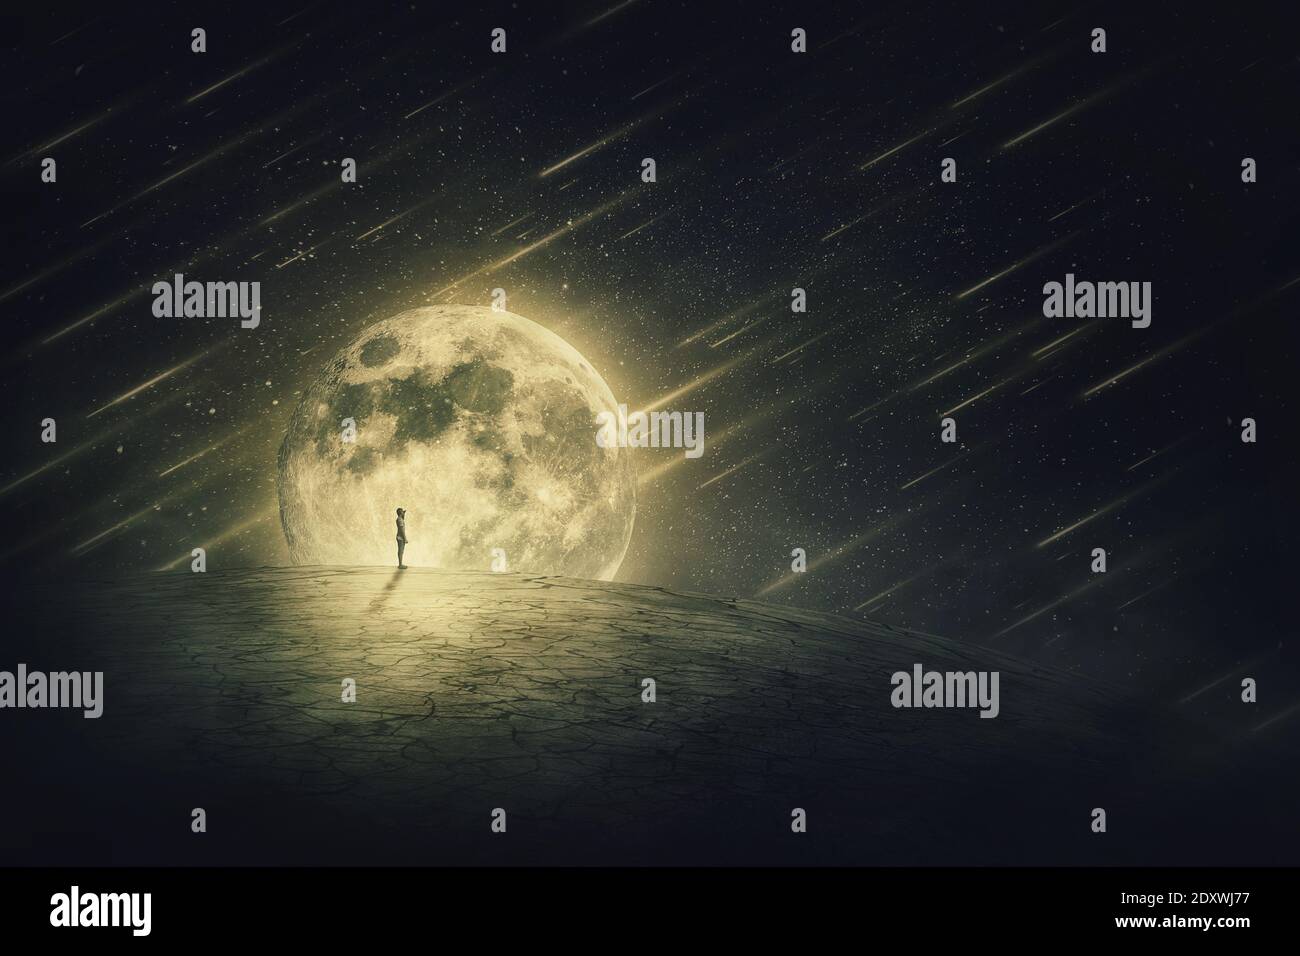 Scena mondiale surreale con una silhouette di persona, da sola su una terra vuota asciutta, guardando il cielo stellato notte con le comete che cadono, su un backgro luna piena Foto Stock